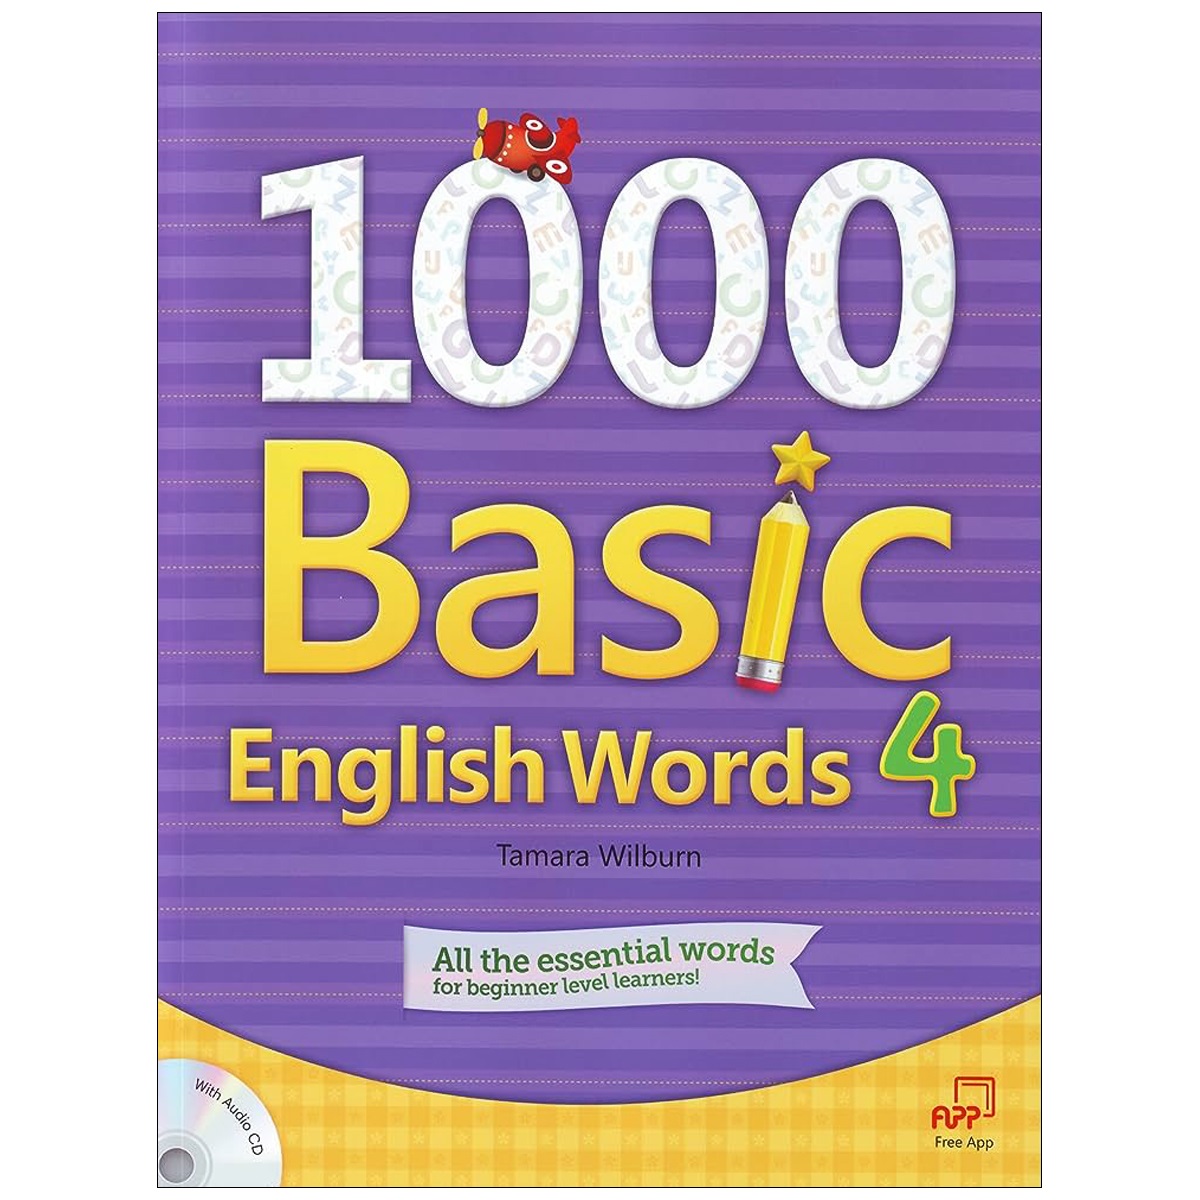 1000Basic English Words 4